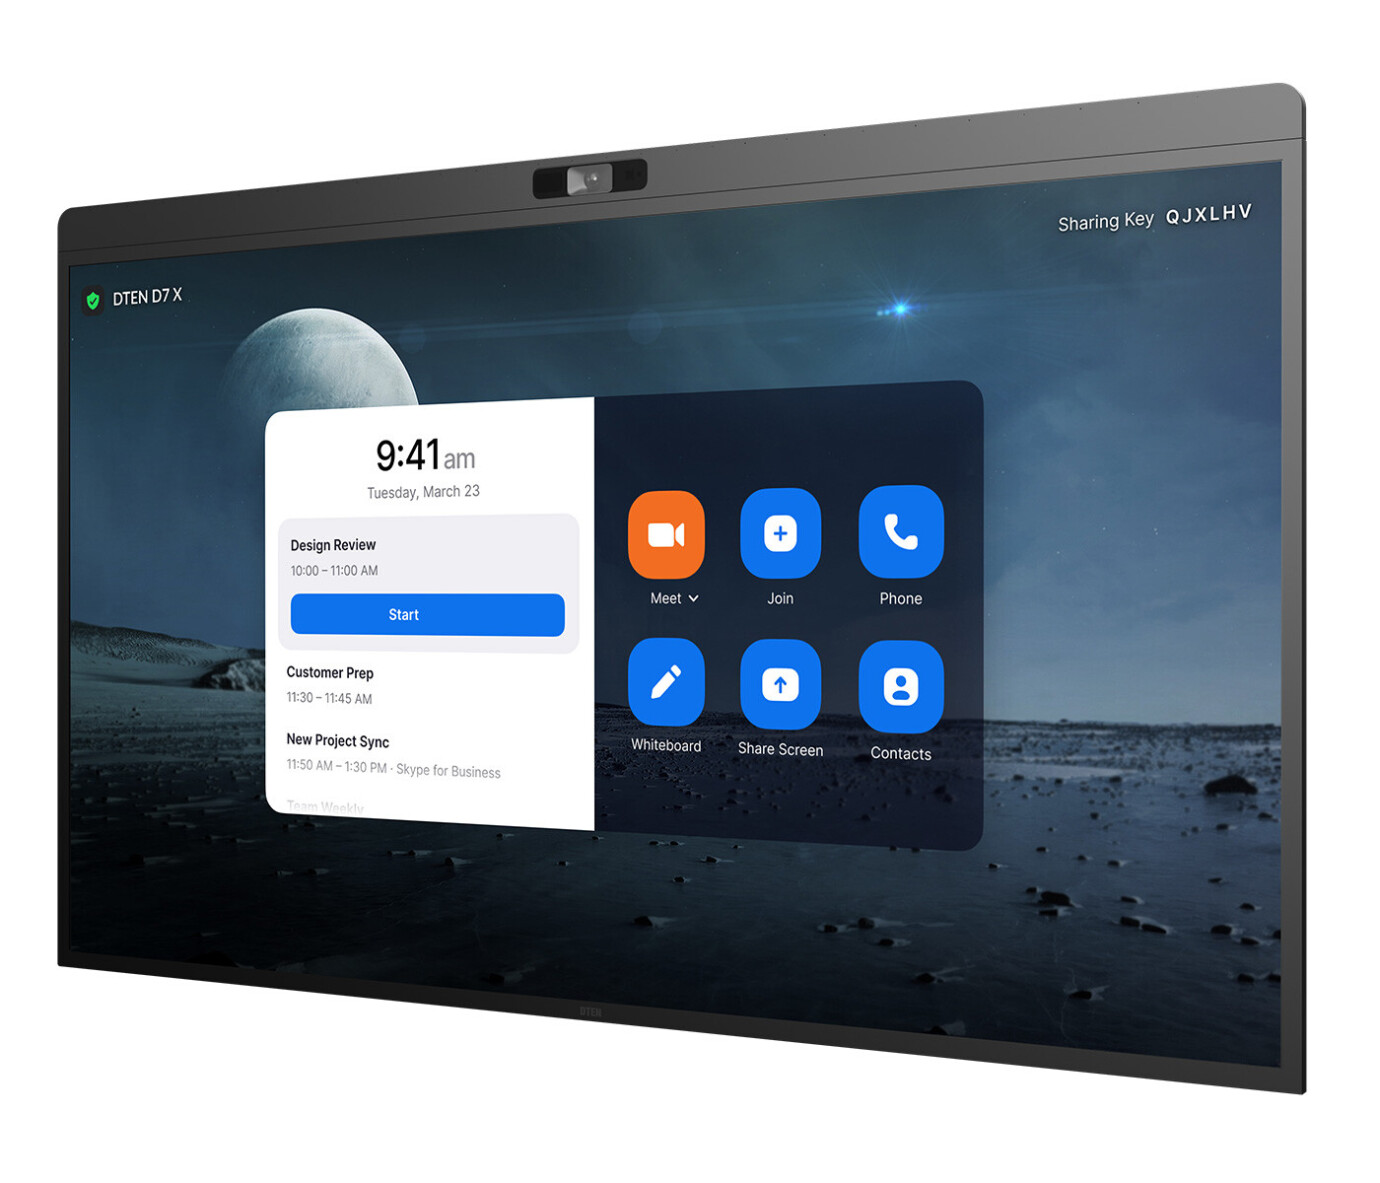 Vorschau: DTEN D7X 75" Windows Edition All-in-One Videokonferenz Touch Display mit 4K Auflösung